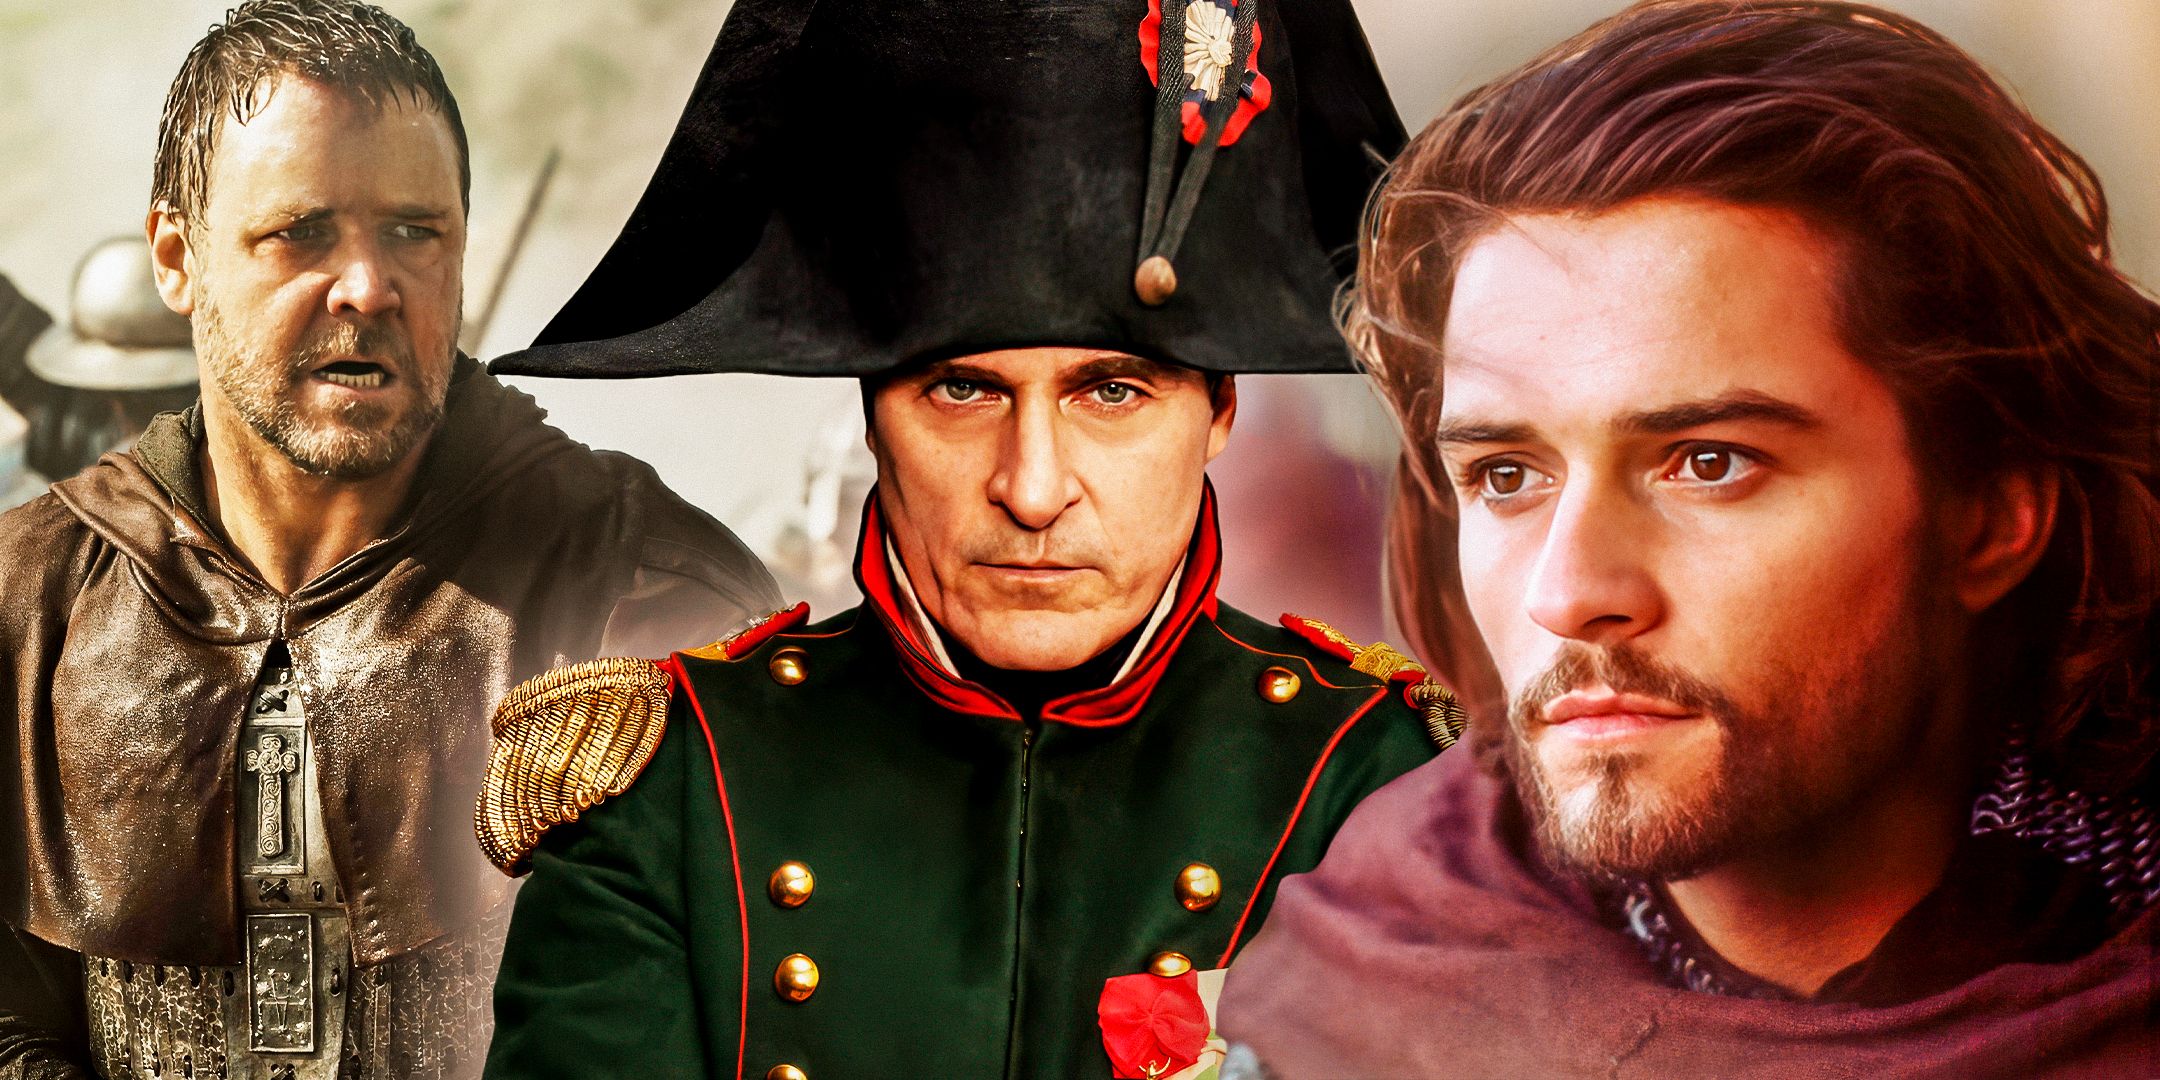 Las 8 películas históricas de Ridley Scott, clasificadas de peor a mejor (incluido Napoleón)